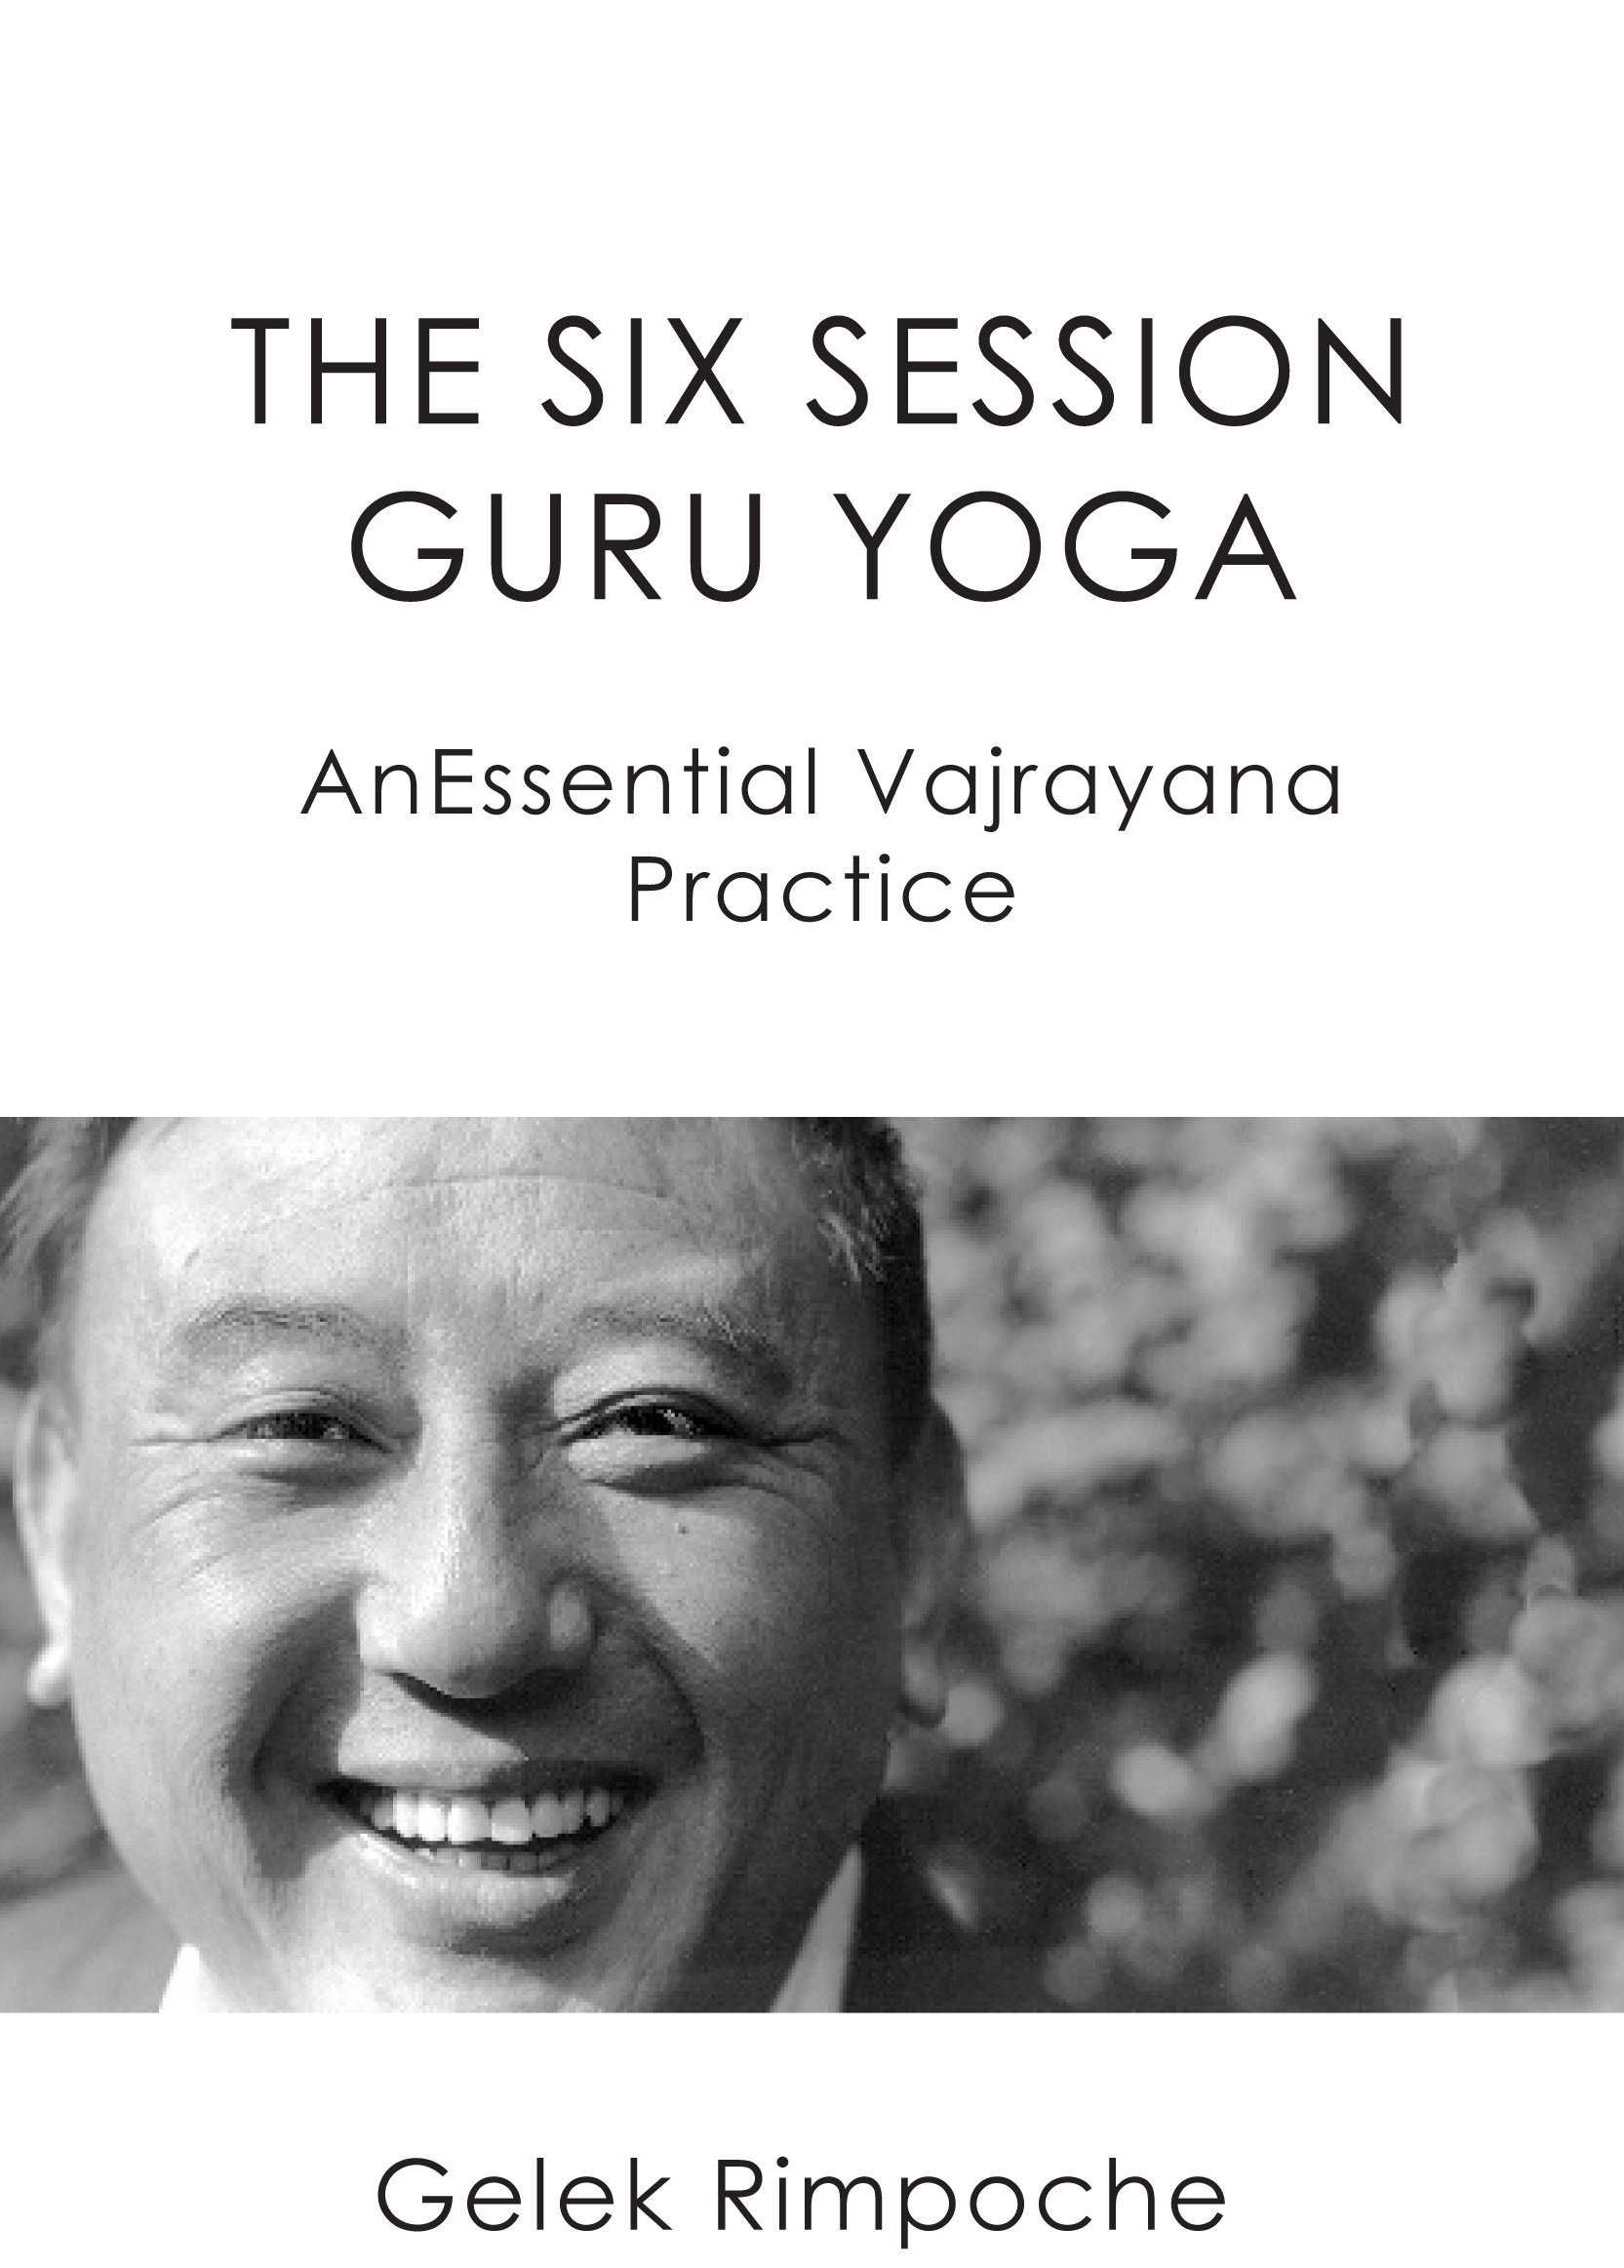 The Six Session Guru Yoga